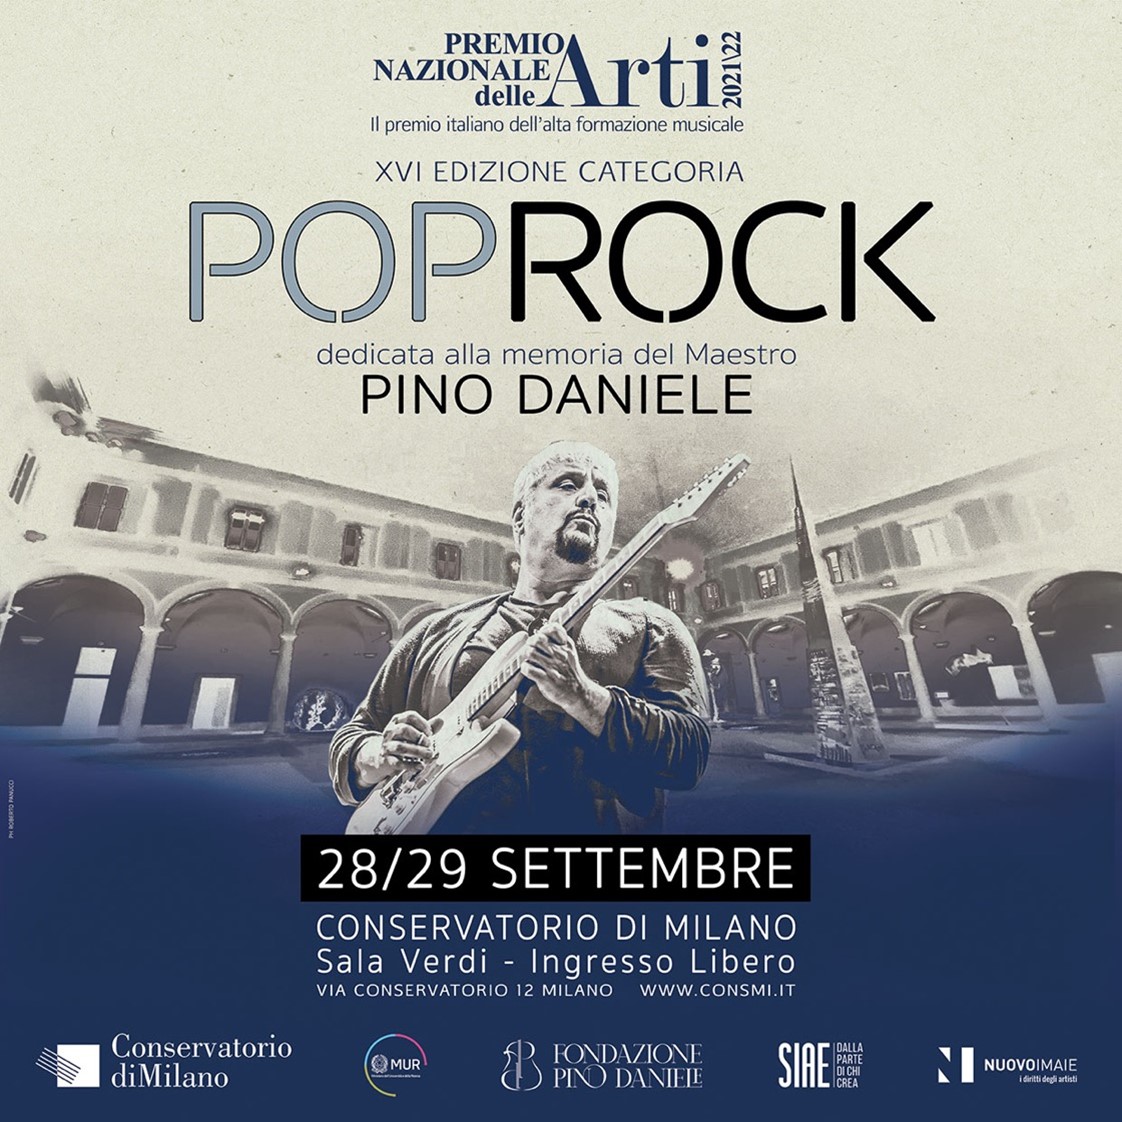 Entro il 2 agosto le candidature al Premio italiano dell’Alta Formazione Musicale dedicato a Pino Daniele